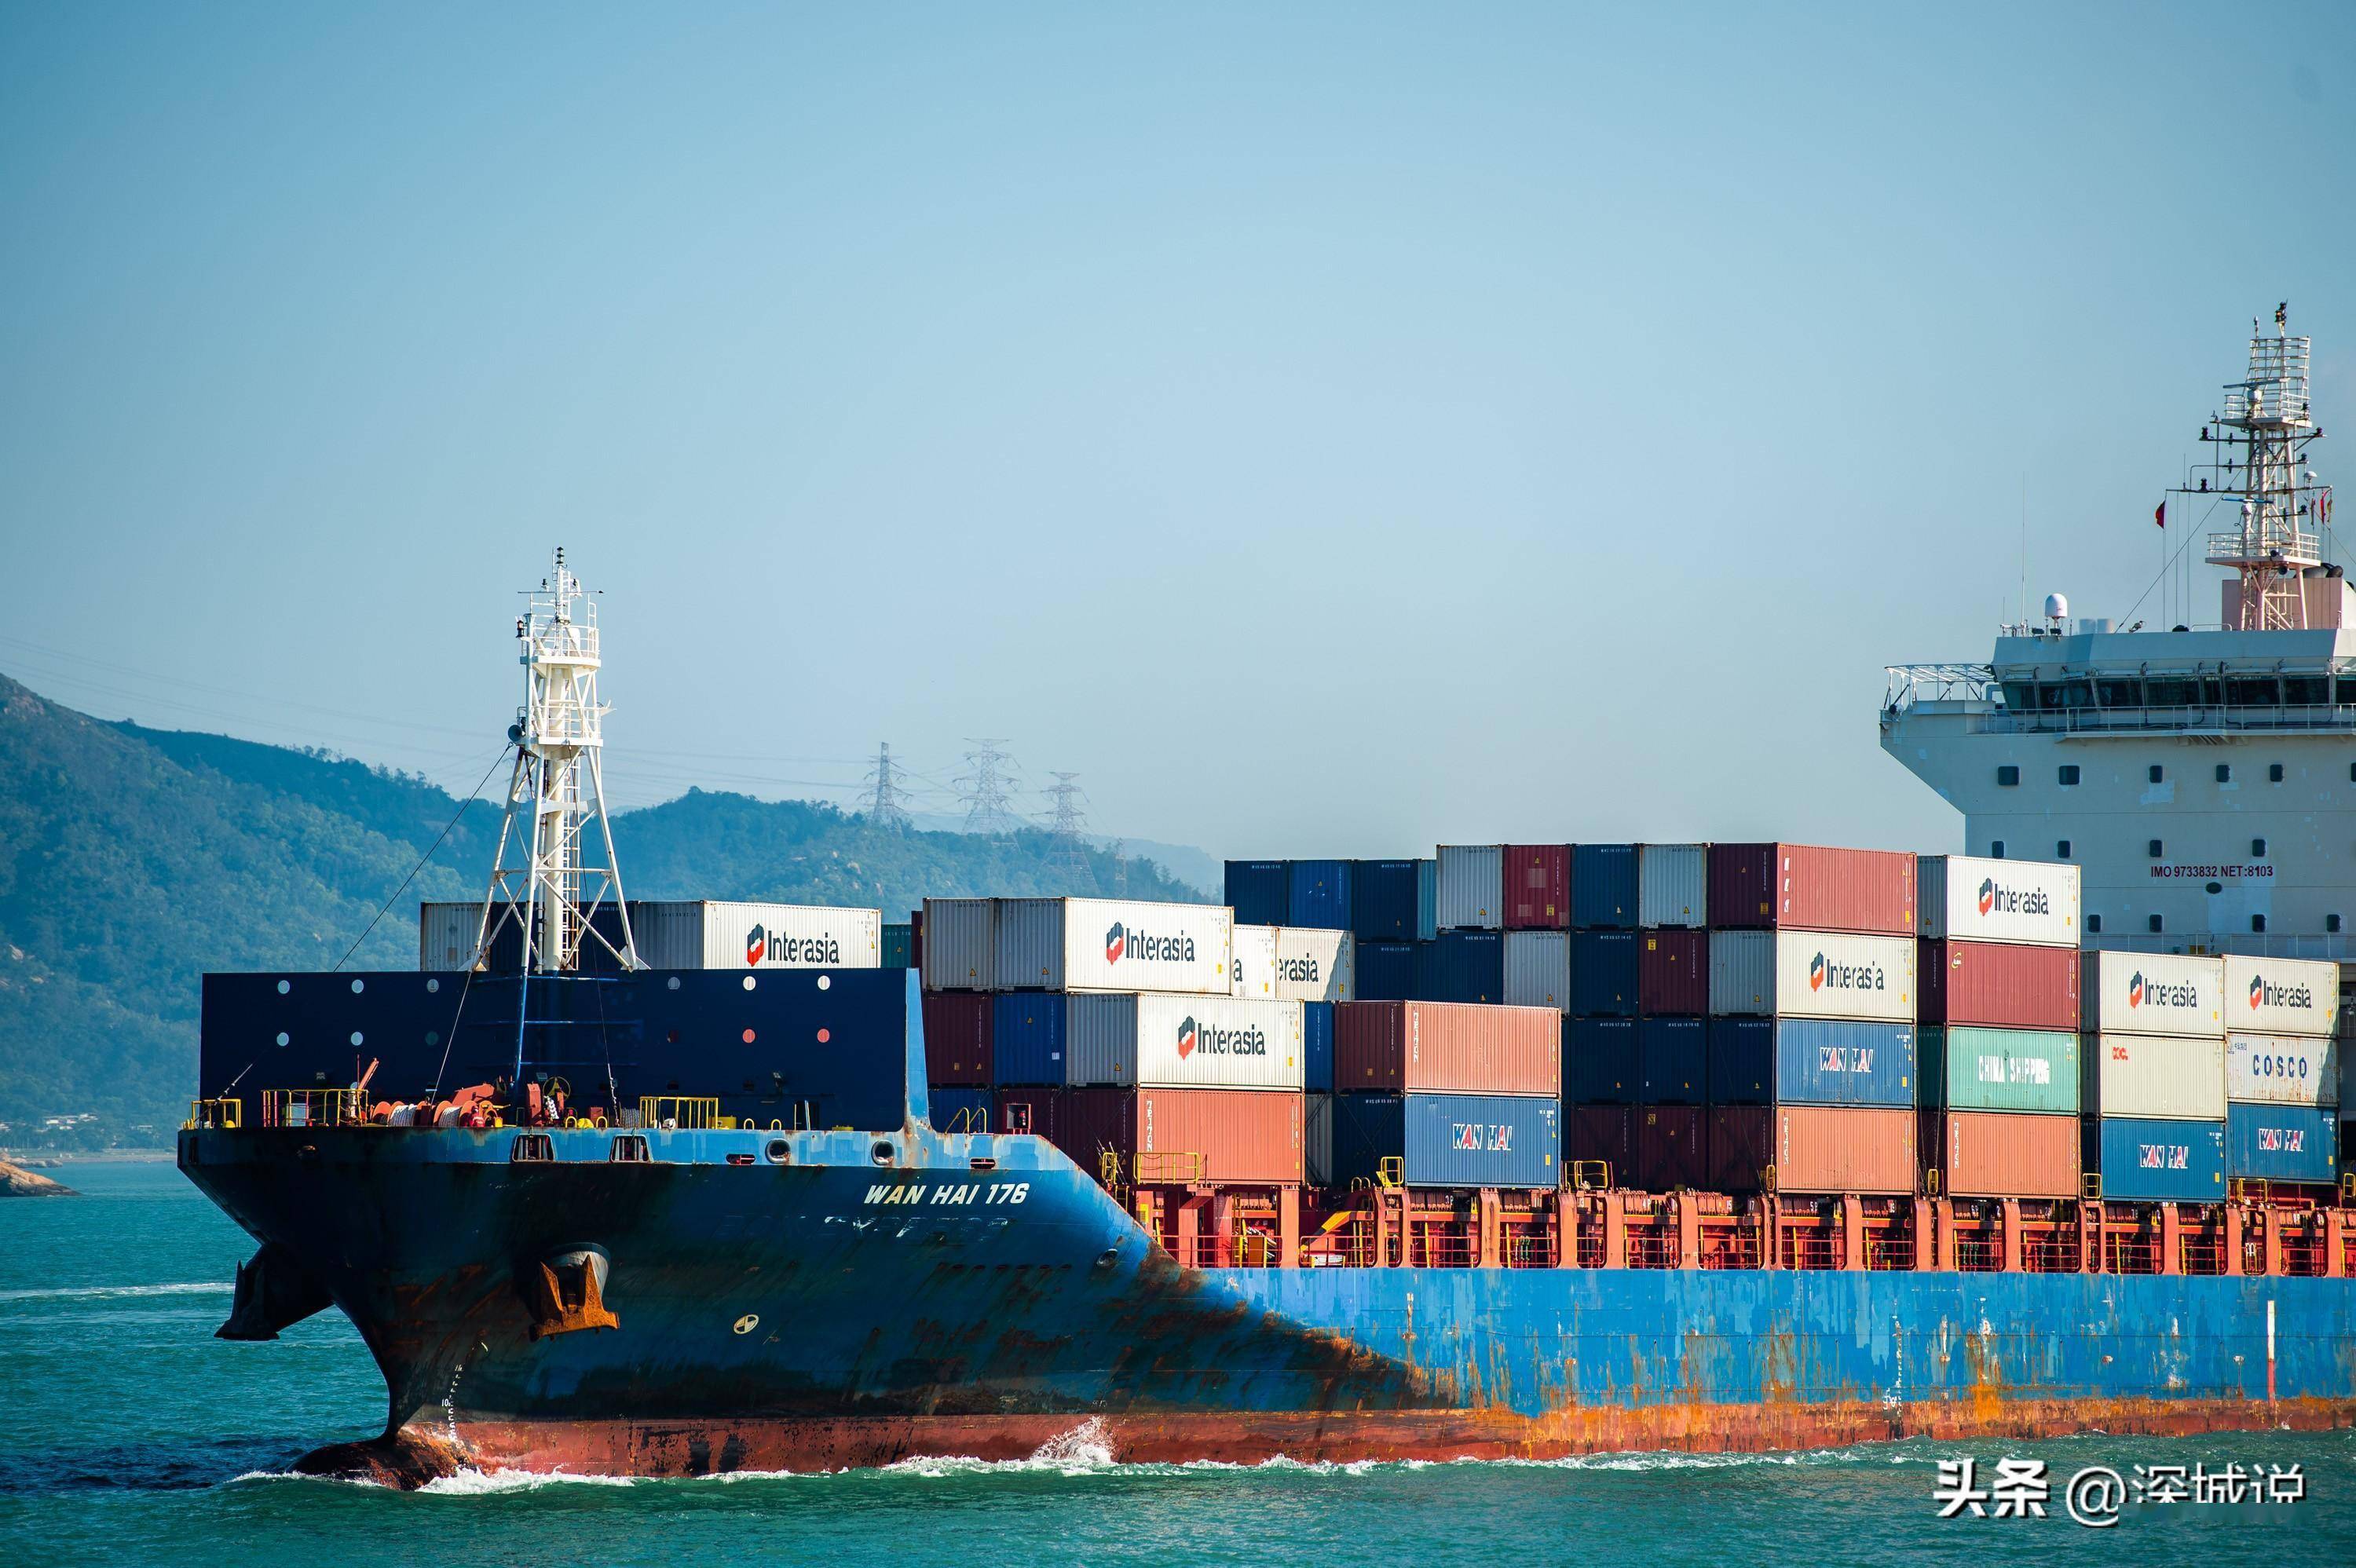 海上看深圳西部港区:大型集装箱货轮进出繁忙